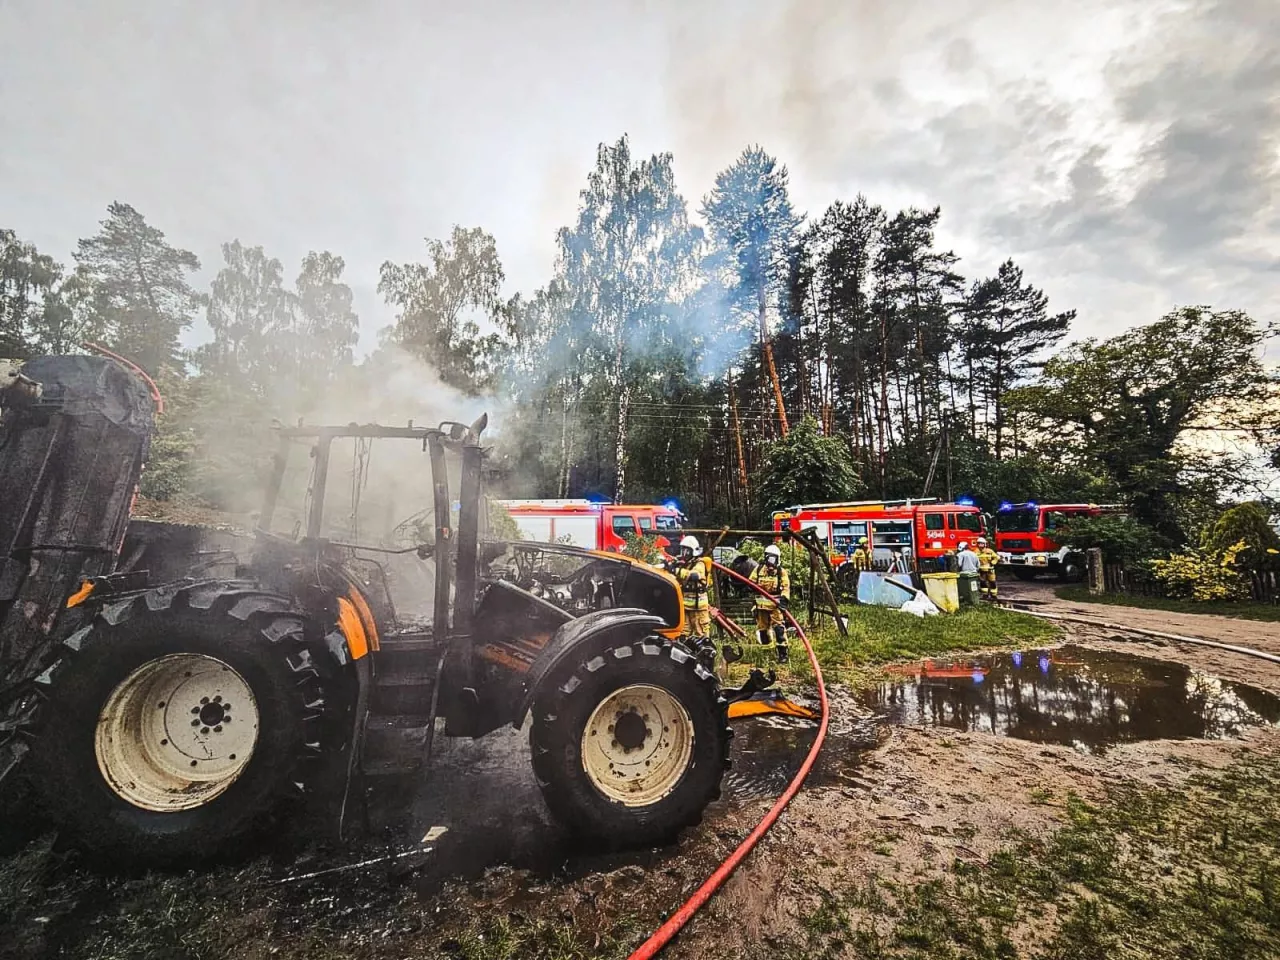 Po dojeździe na miejsce zdarzenia pierwszych zastępów straży pożarnej zastano ciągnik rolniczy objęty całkowicie pożarem.